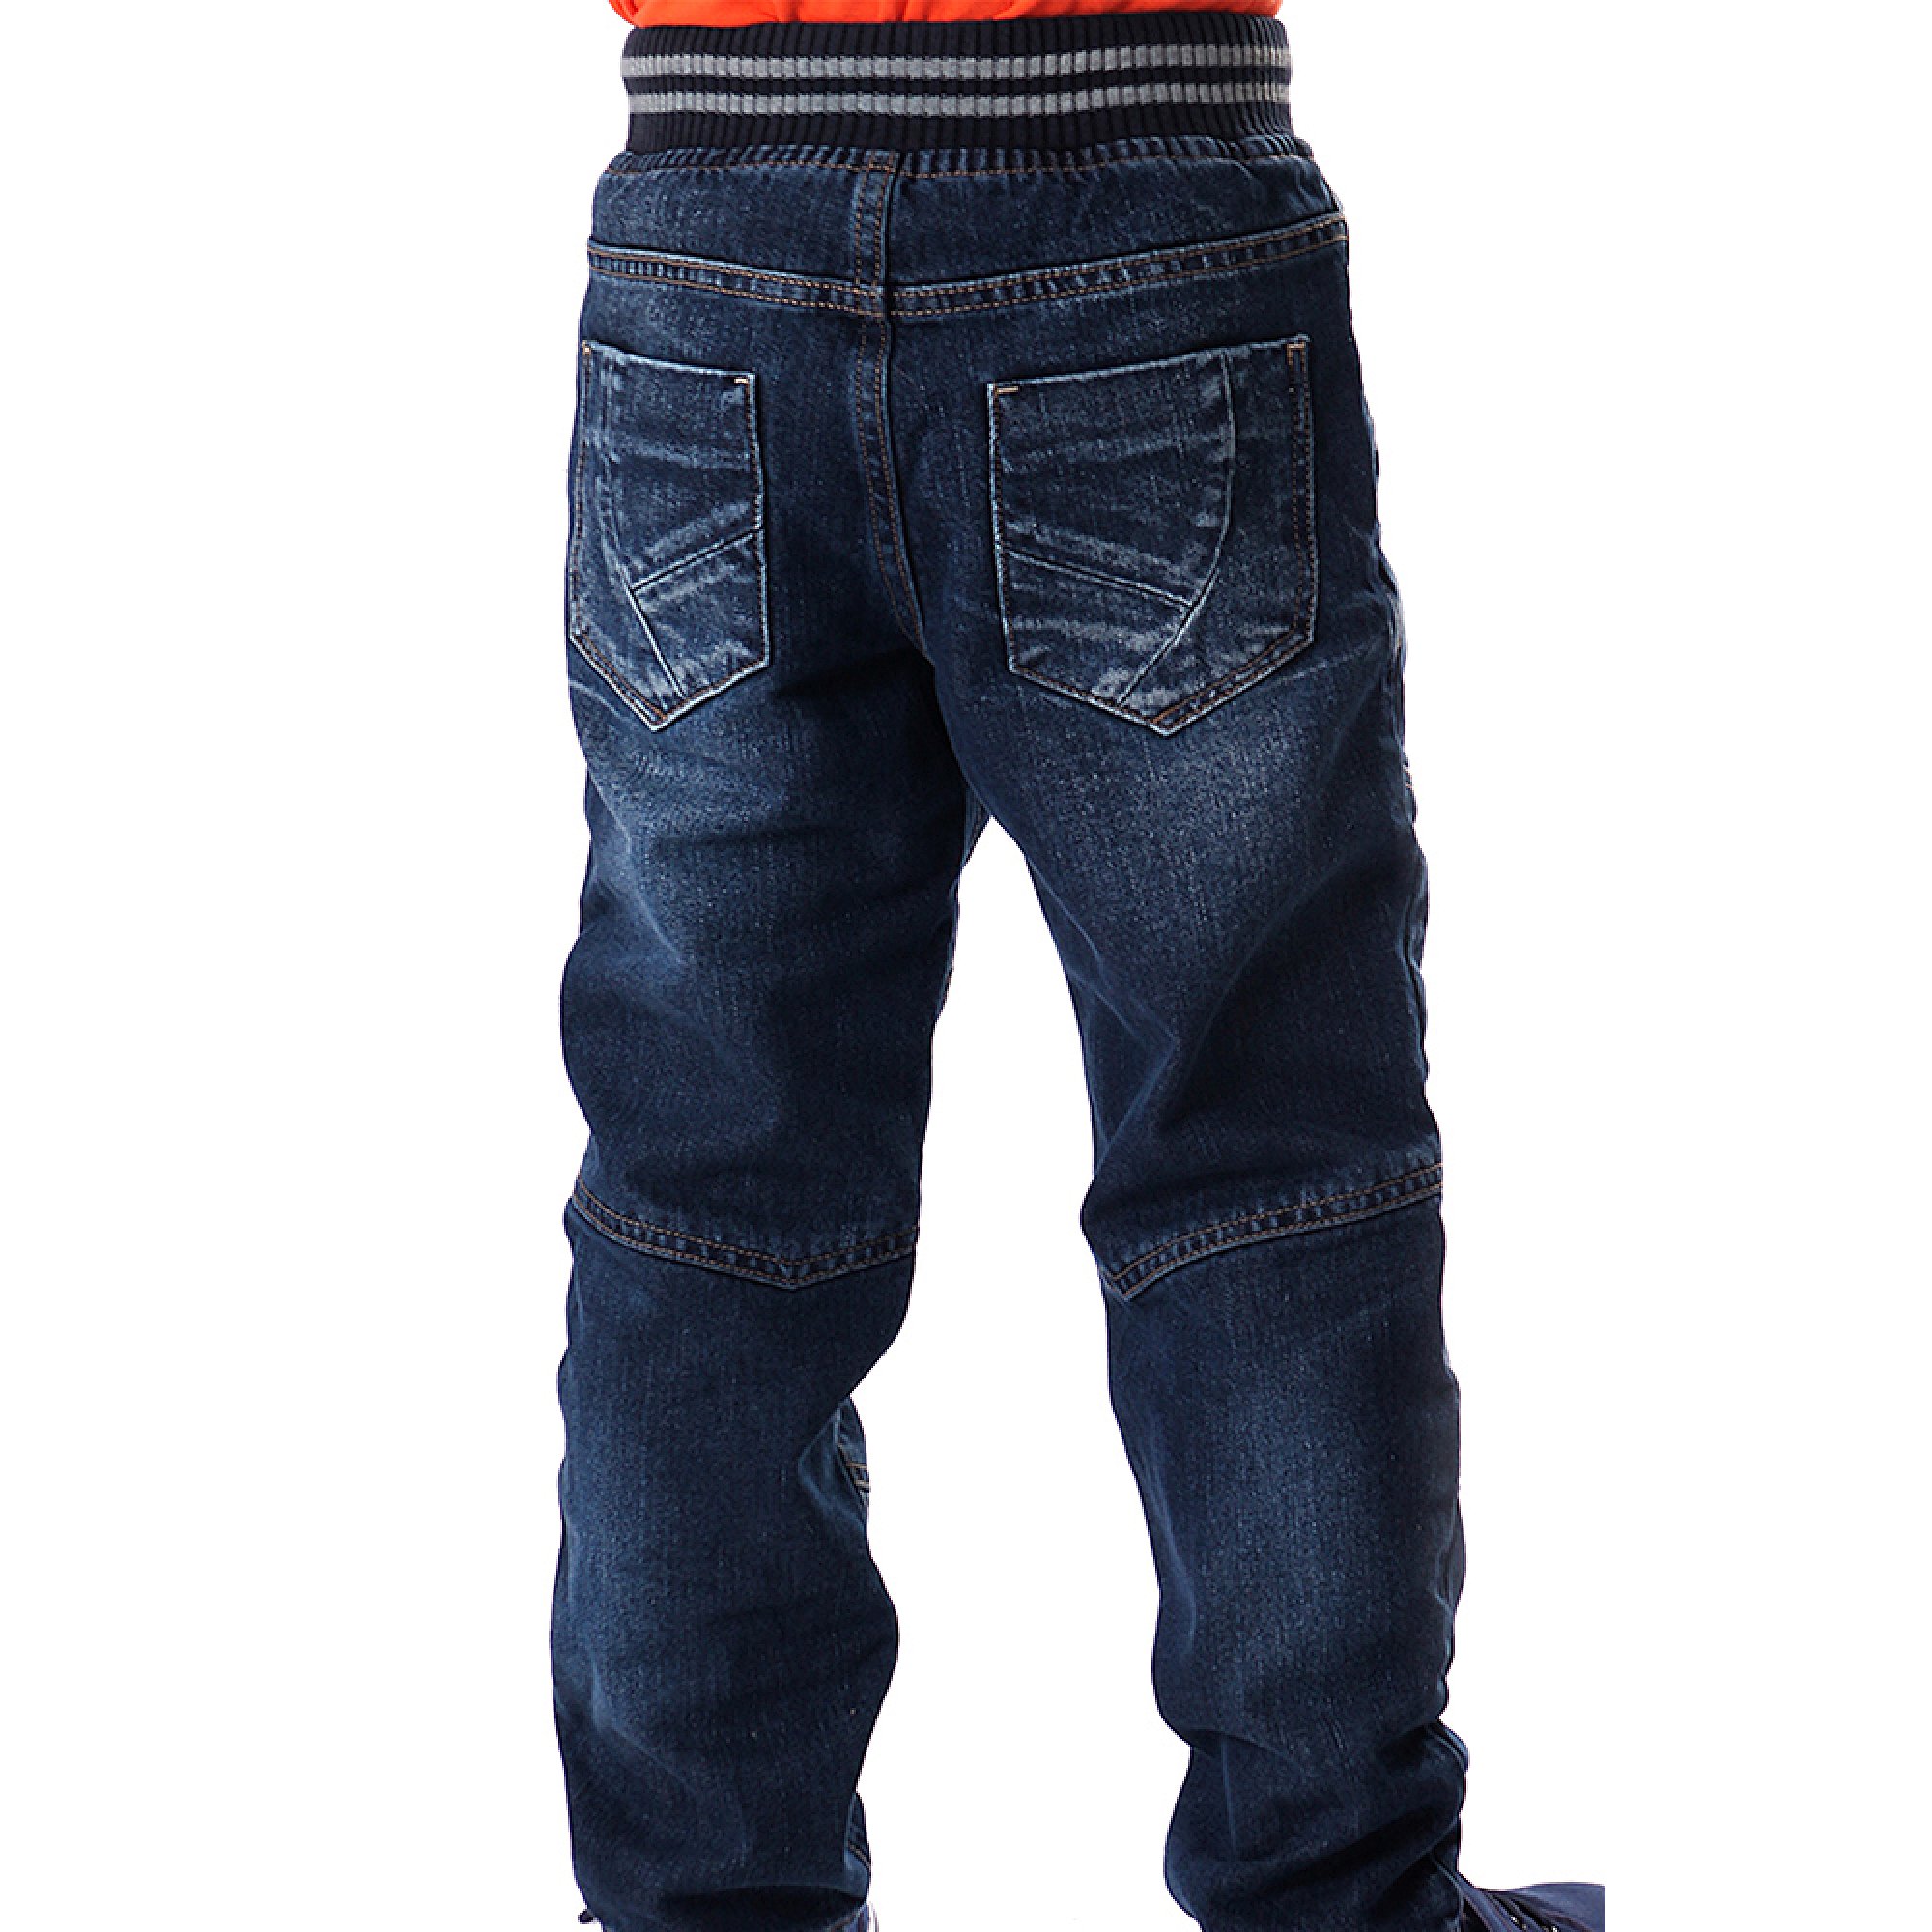 Теплые джинсы для мальчика LIGAS